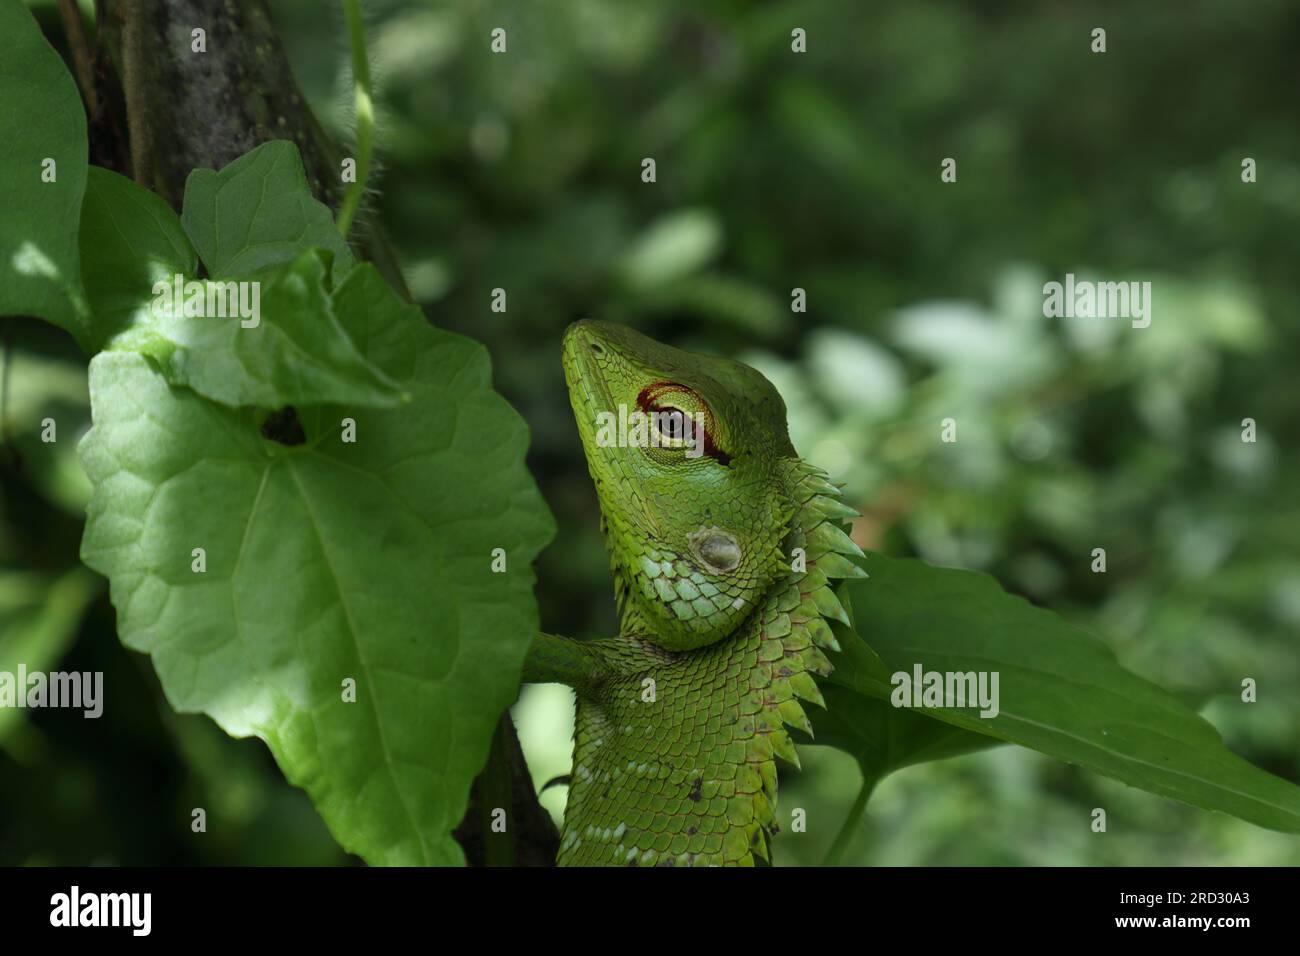 Vista ravvicinata della testa e del volto di una comune lucertola verde della foresta (Calotes Calotes) mimetica tra le foglie verdi Foto Stock